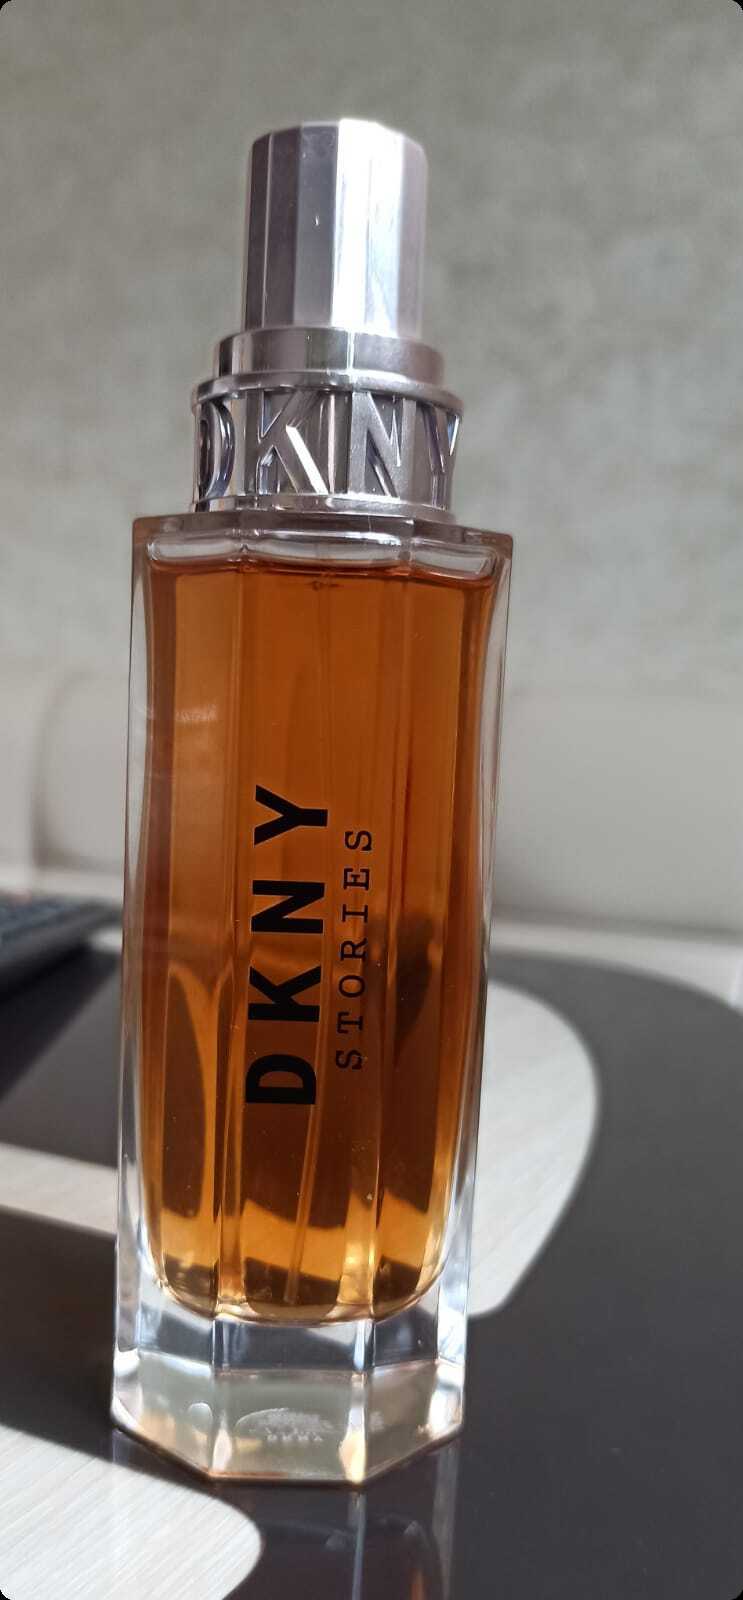 Donna Karan DKNY Stories Парфюмерная вода (уценка) 100 мл для женщин